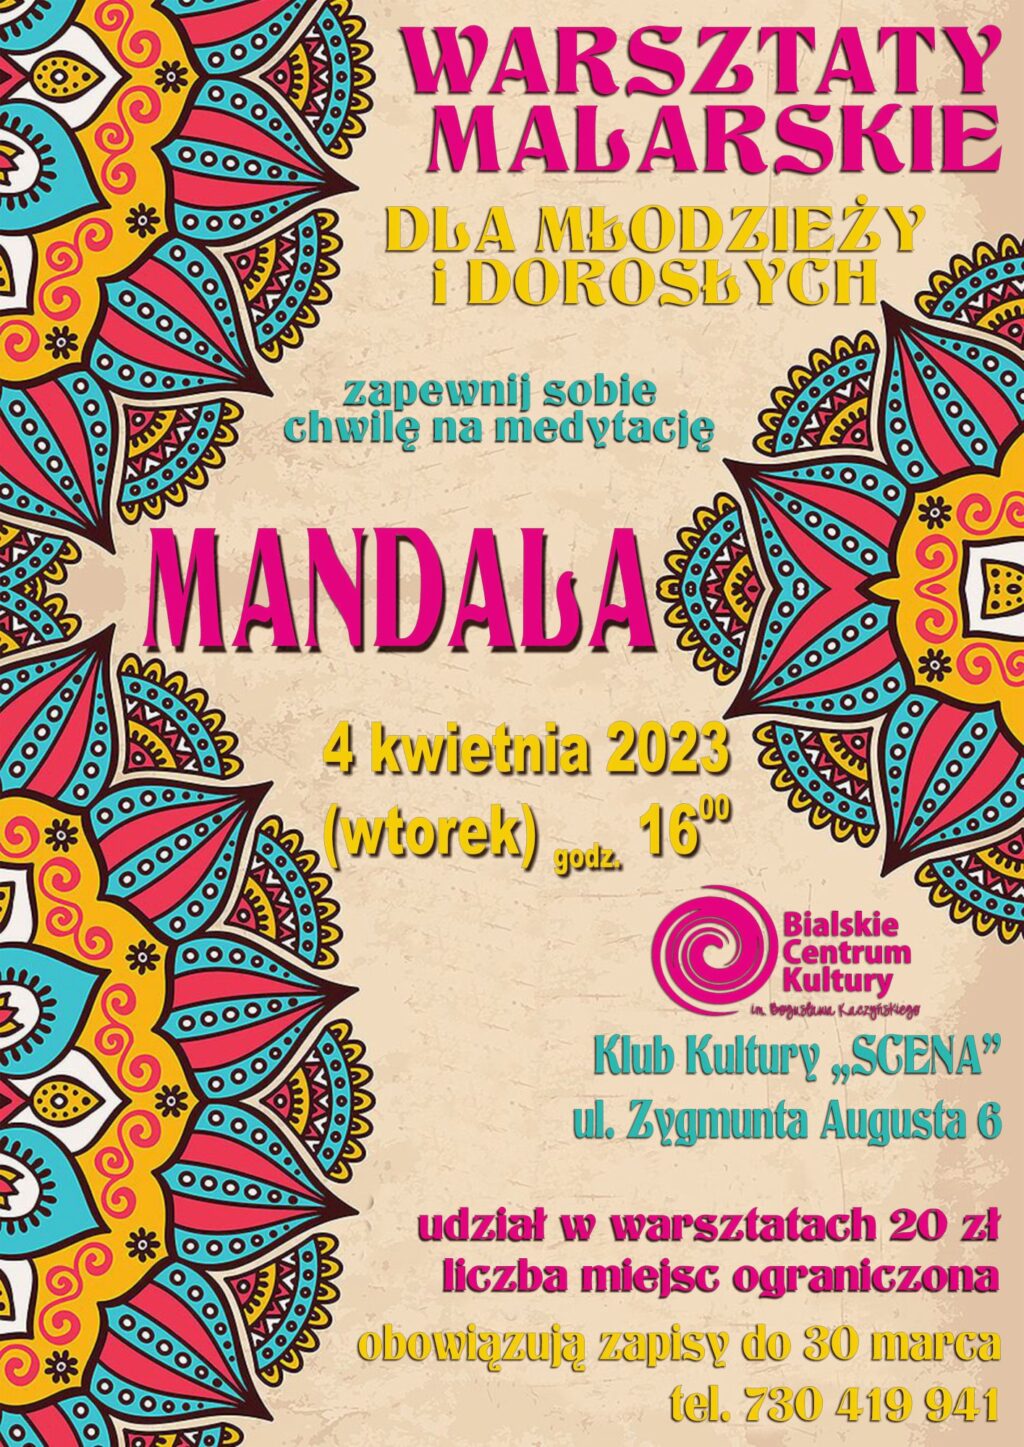 Warsztaty malarskie “Mandala”